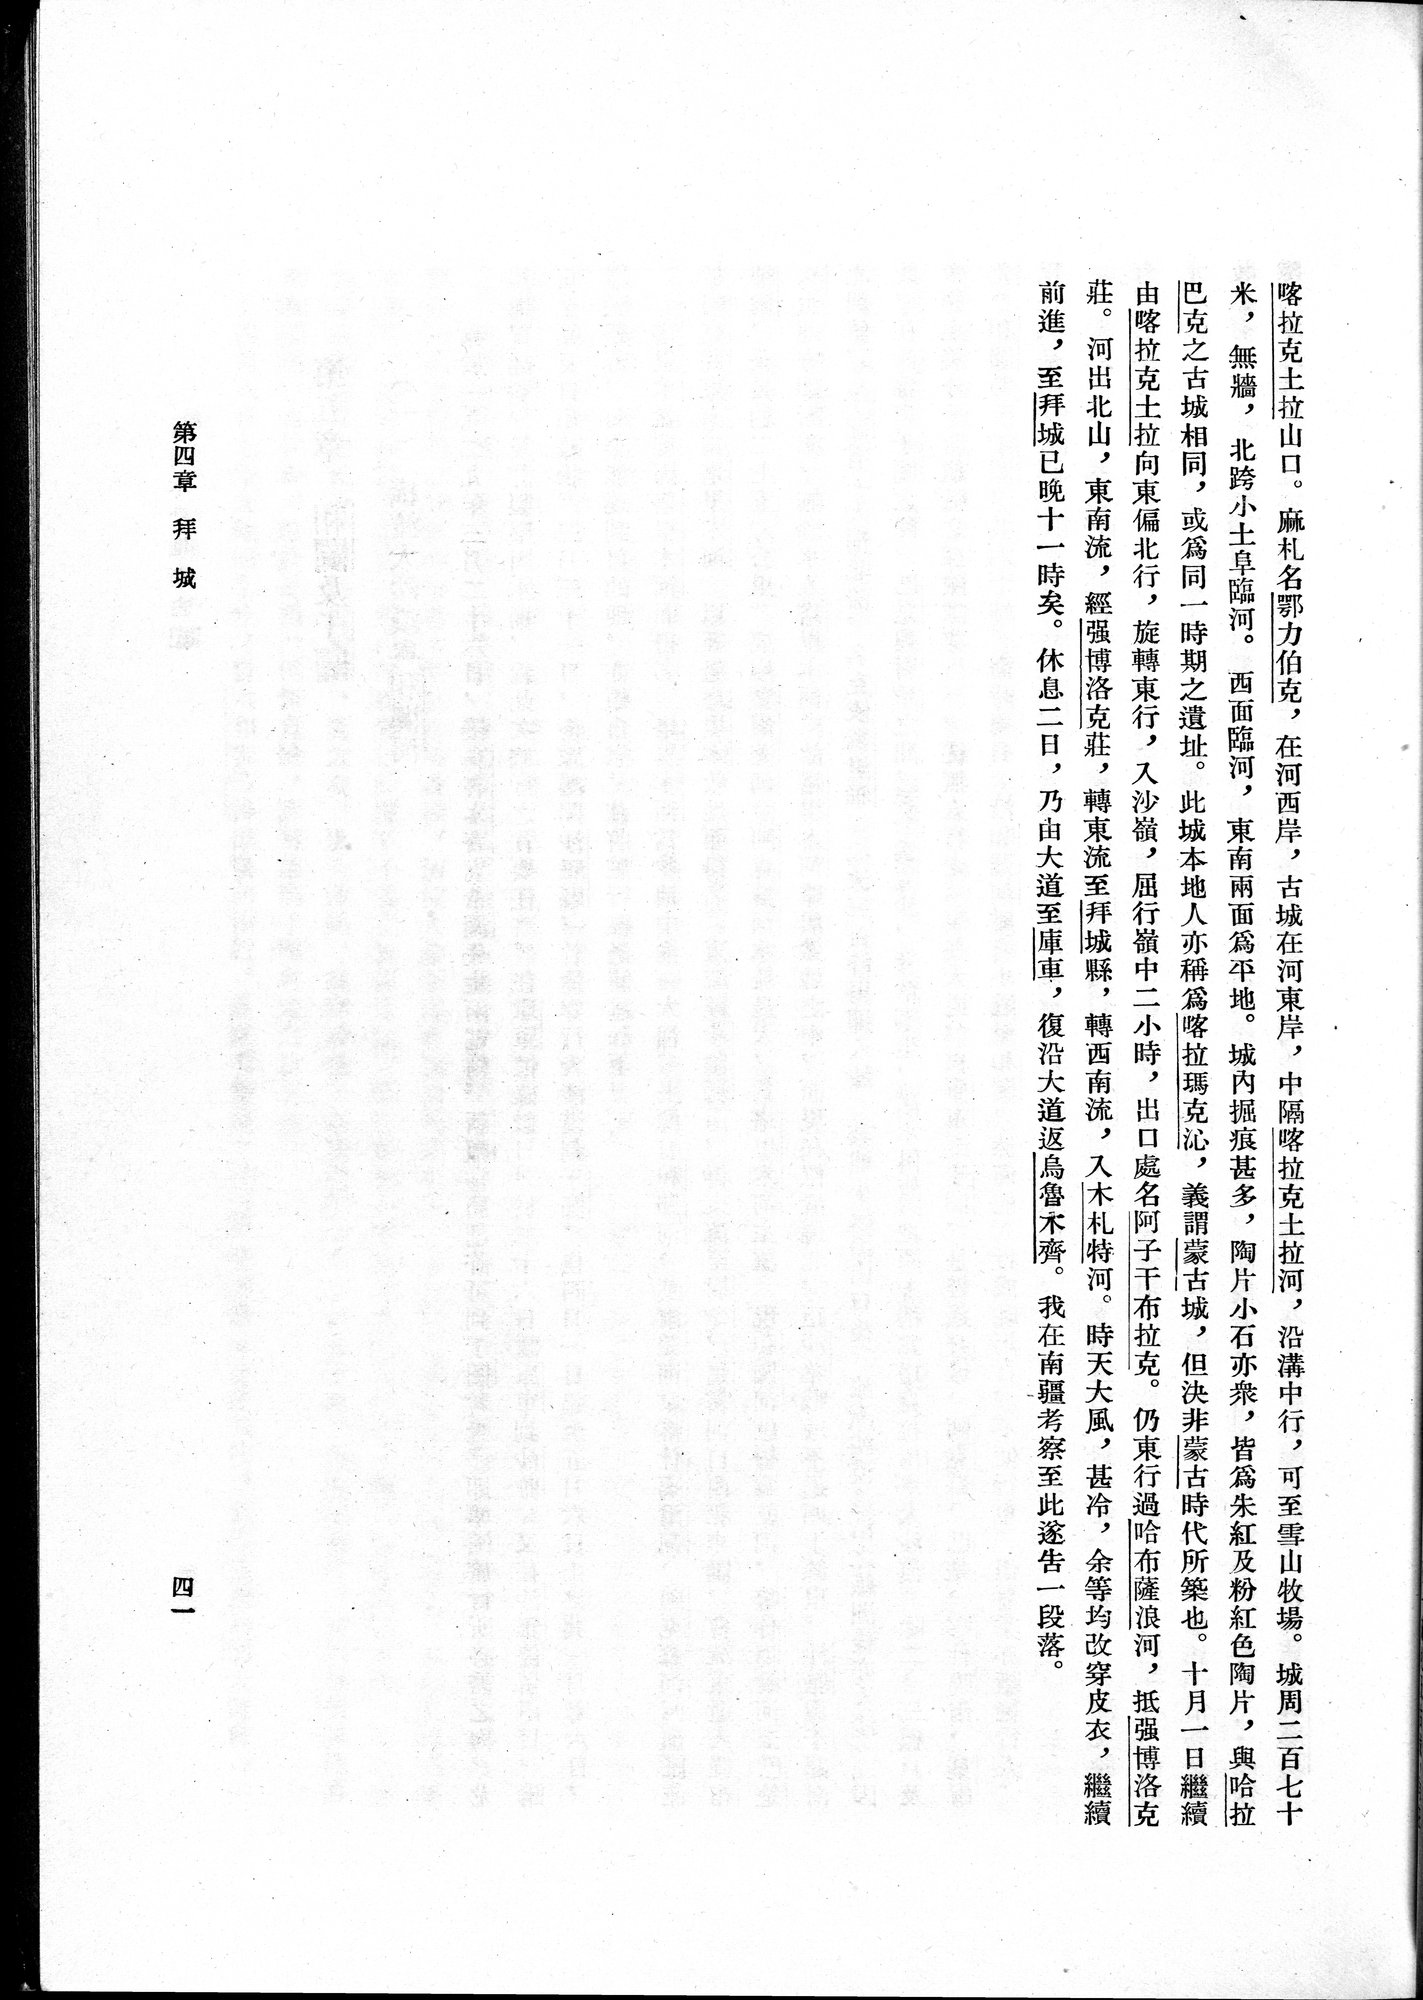 塔里木盆地考古記 : vol.1 / Page 65 (Grayscale High Resolution Image)